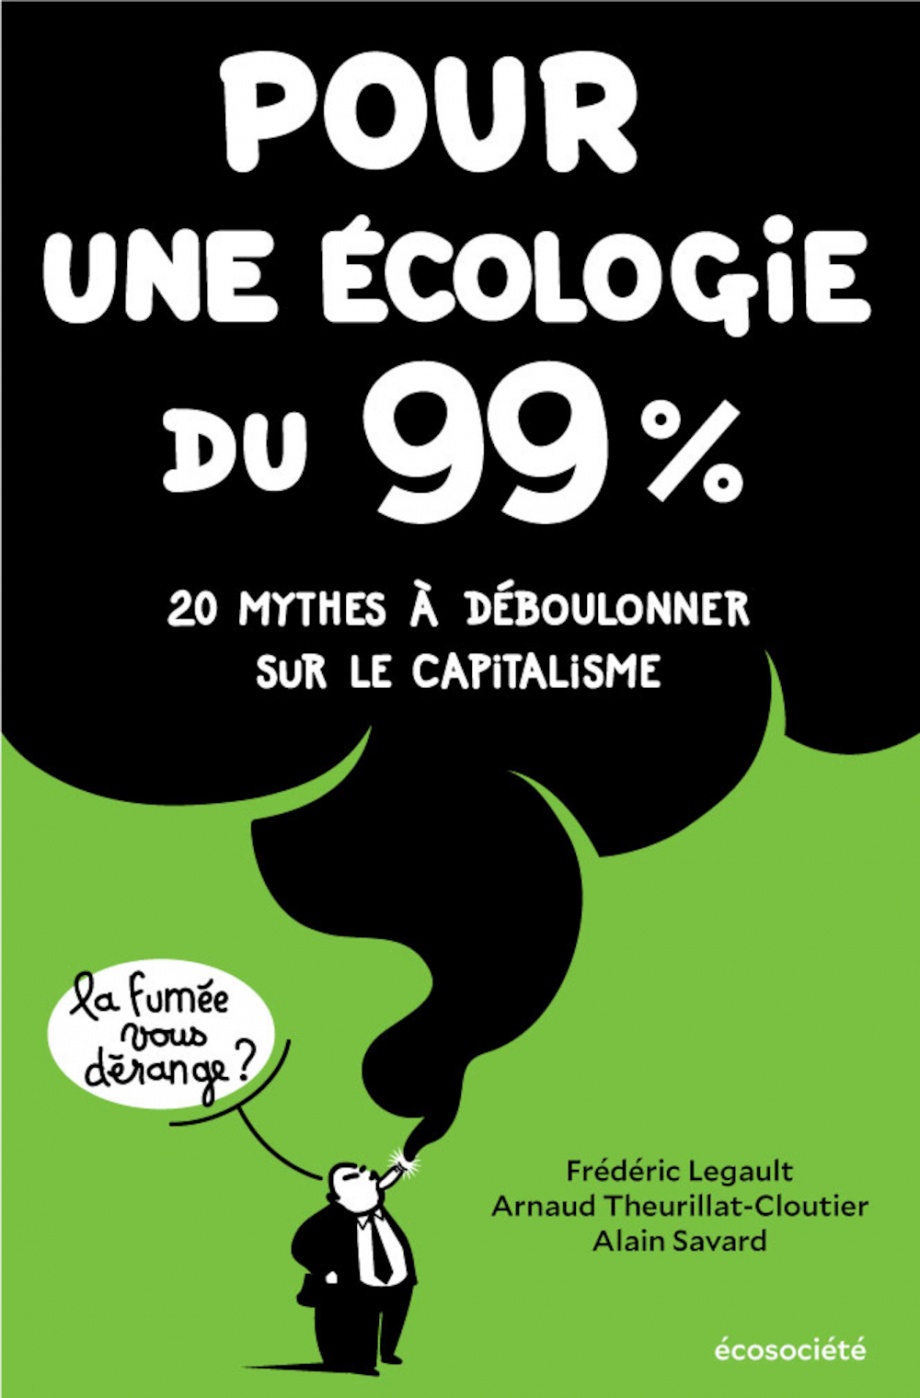 Pour une écologie du 99% : 20 mythes à déboulonner de Frédéric Legault